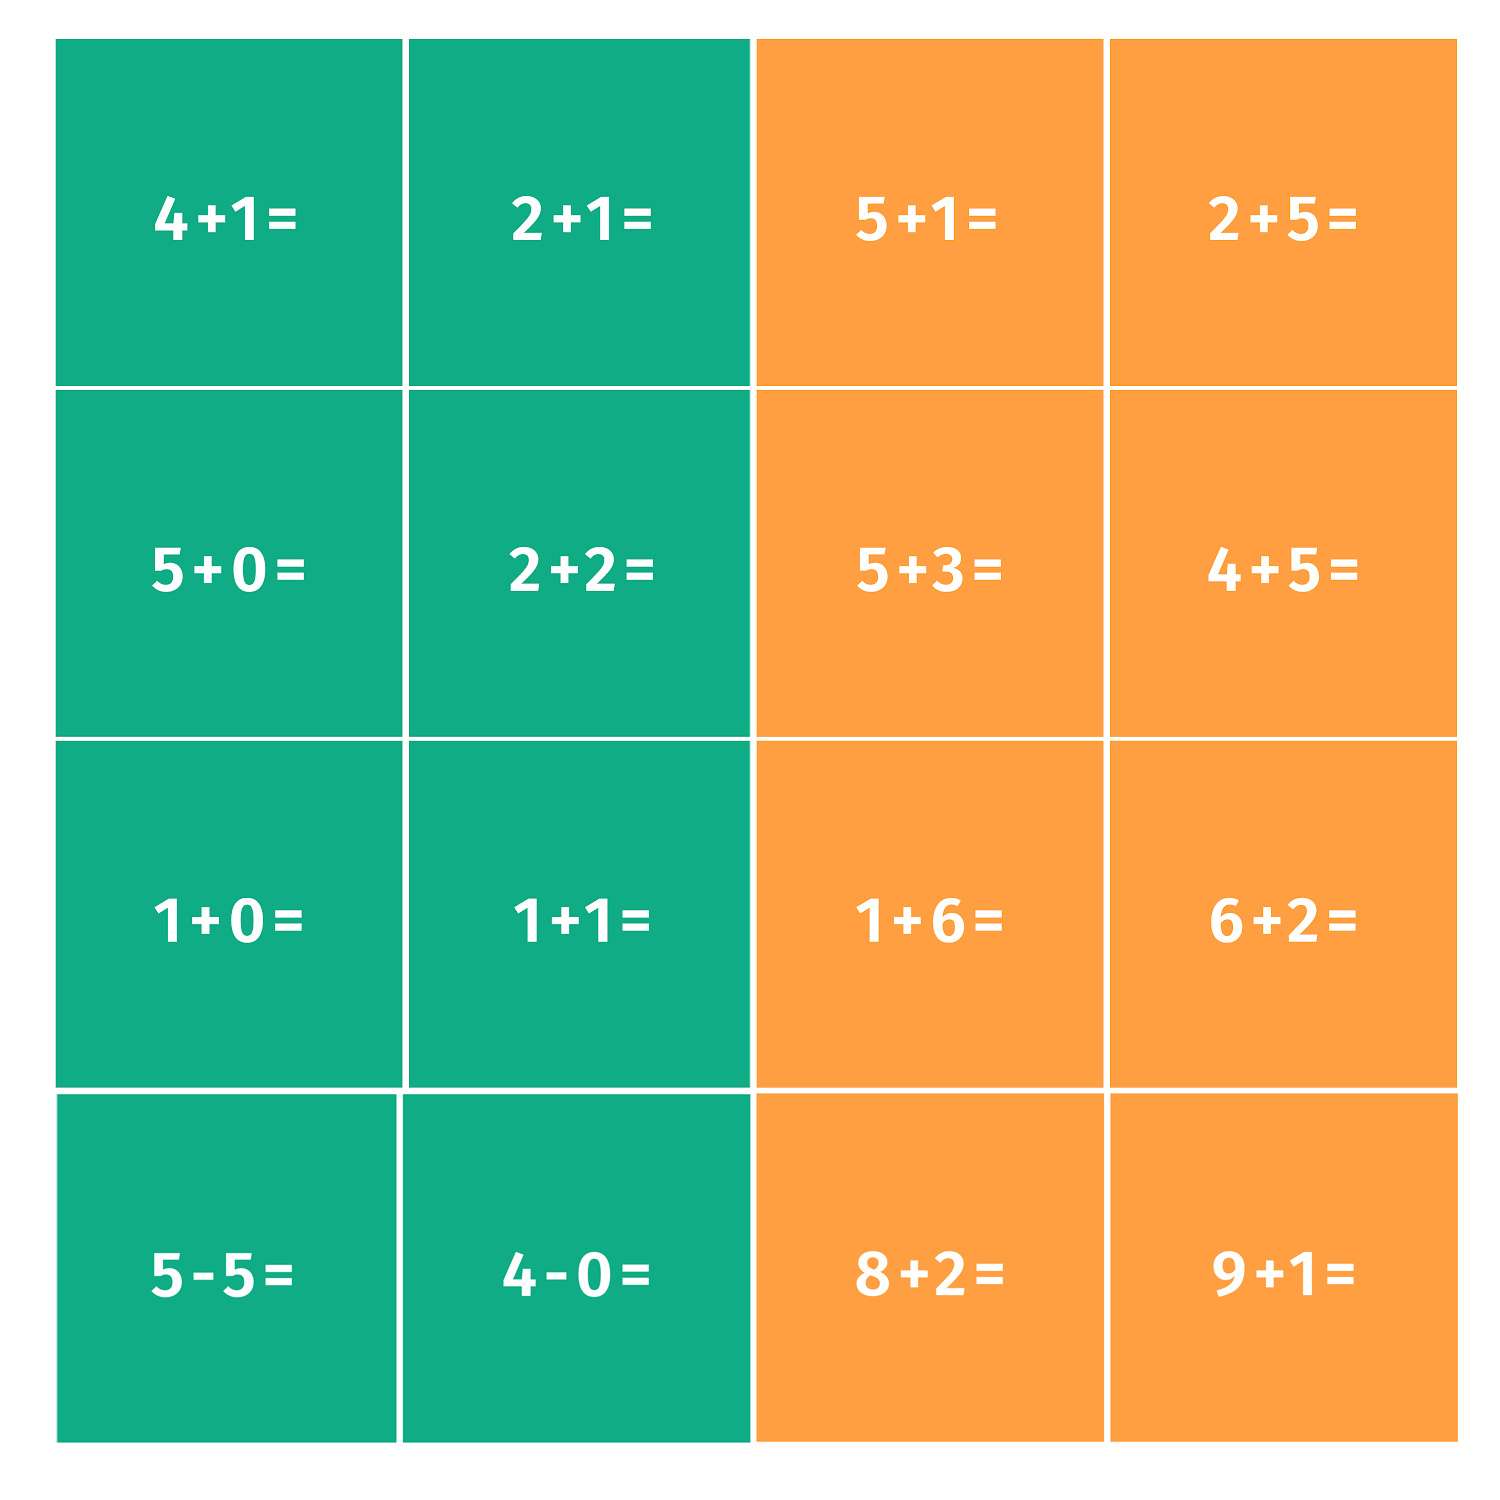 Дополнительный набор Даджет для игры Coobic курс математики: решаем примеры - фото 2